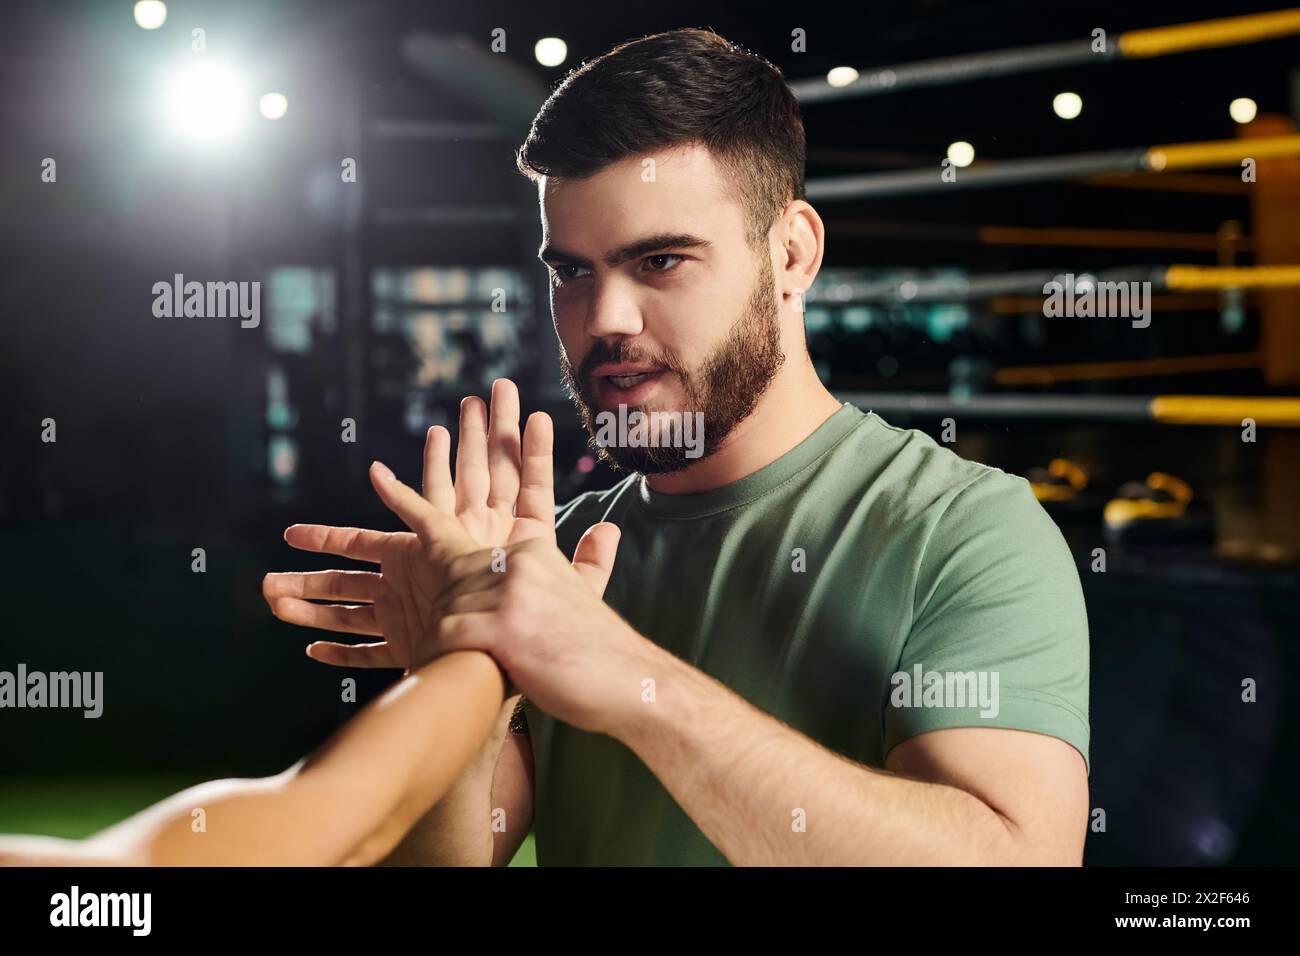 Un homme démontre des techniques d'autodéfense à une femme dans un cadre de gymnastique devant une caméra. Banque D'Images